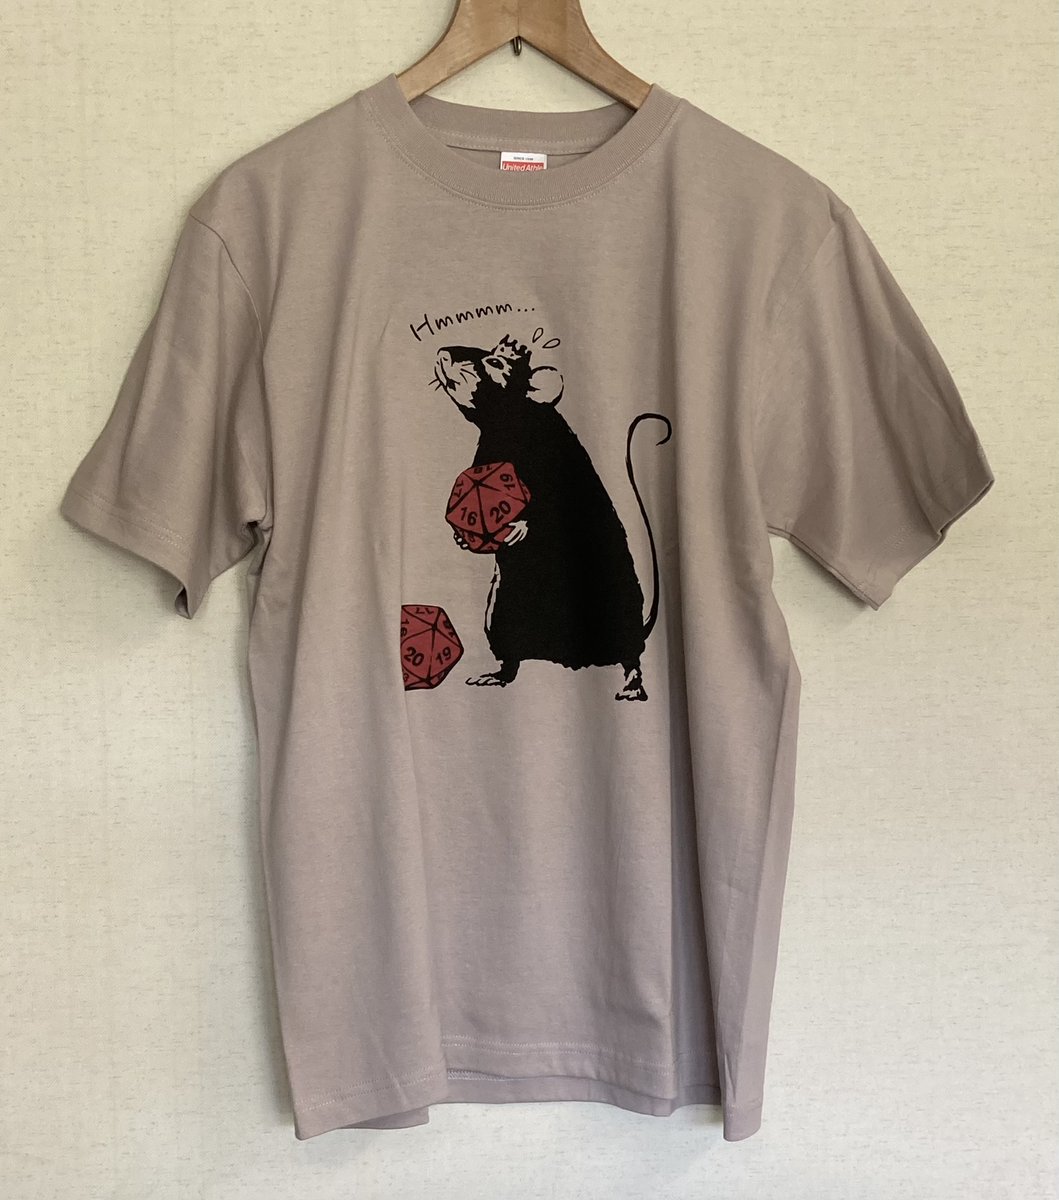 「新作Tシャツの写真撮ってたんだけど… かなり良いぞ 」|goking／山田剛毅のイラスト